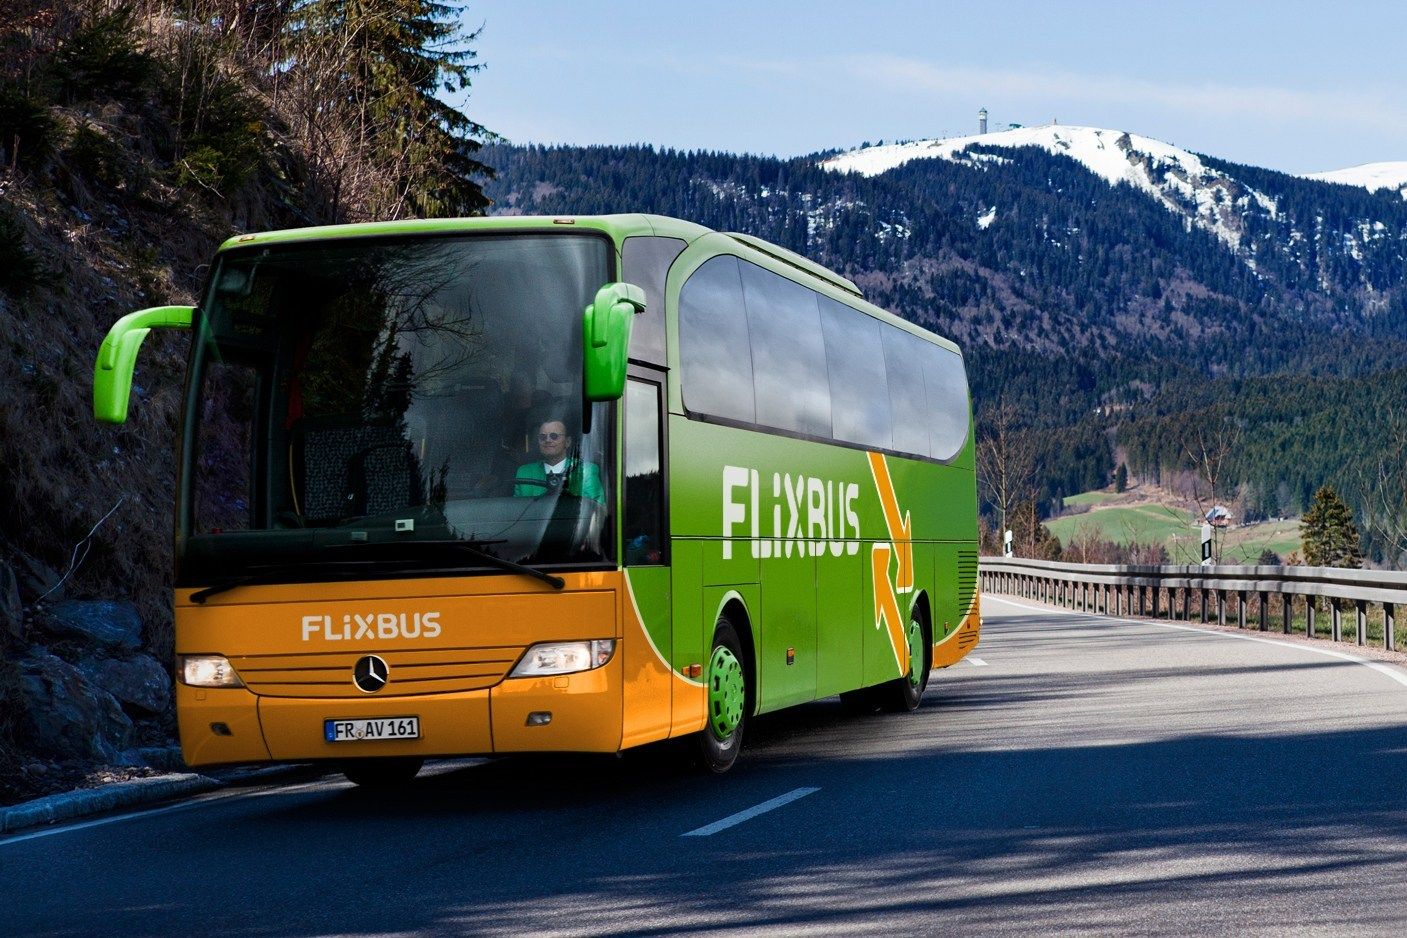 Факел тур автобусные туры. Фликсбус. Flixbus Италия. Intercars Europe автобусы. Flixbus автобусы.